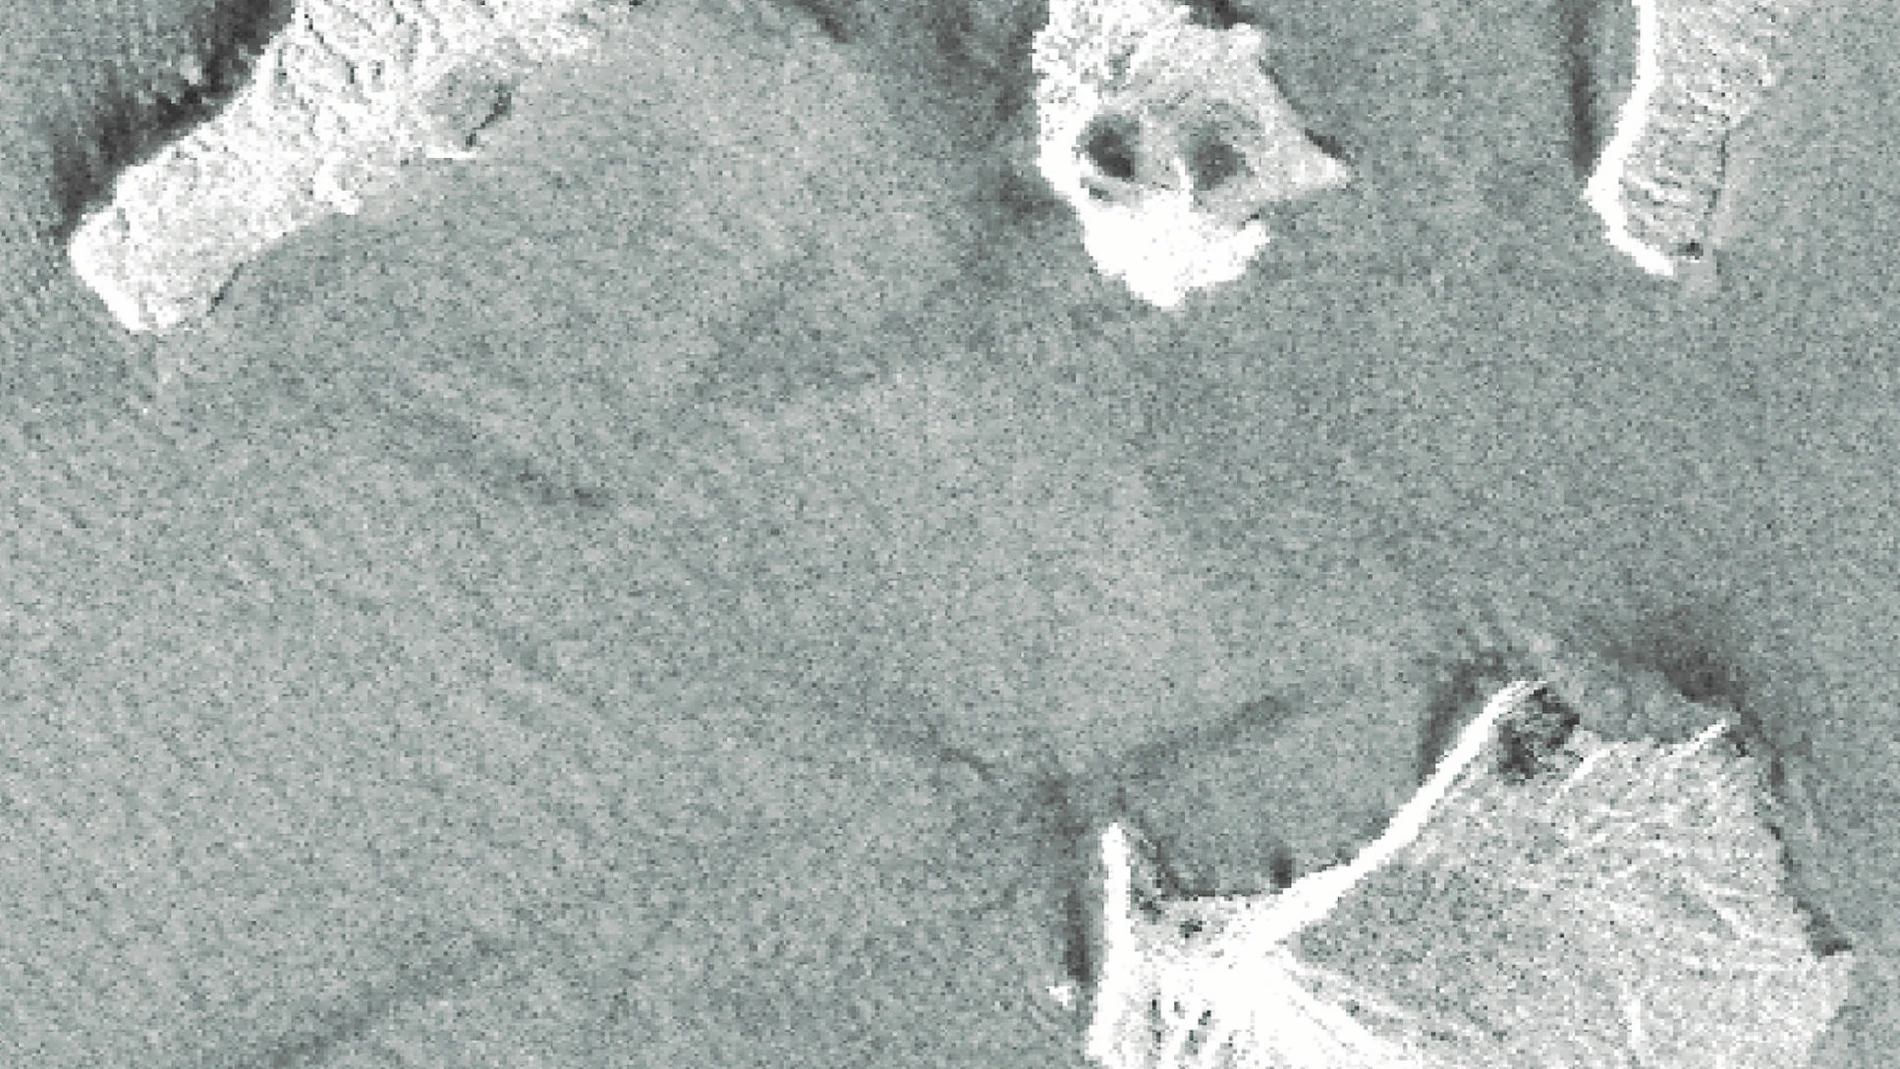 El satélite Alos-2 captó la imagen de la isla, en el centro, antes y después del desprendimiento que provocó el tsunami del pasado día 22 de diciembre